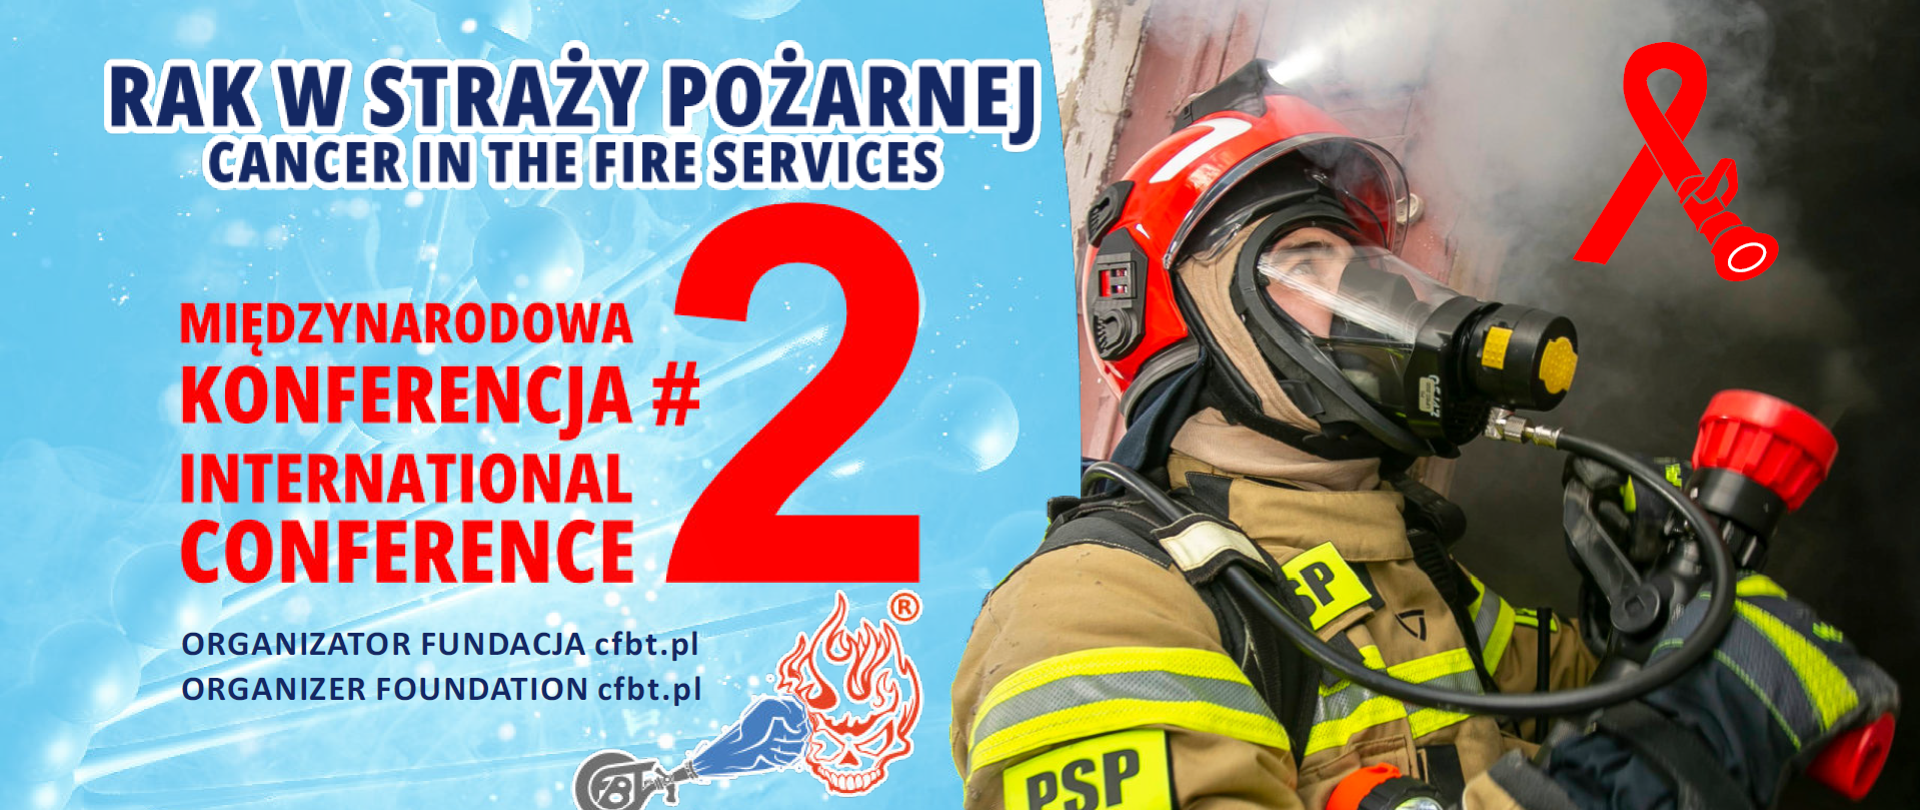 Plakat drugiej Międzynarodowej Konferencji na temat raka w Straży Pożarnej ze strażakiem w ubraniu bojowym. W dolnej części logotypy partnerów i patronów medialnych